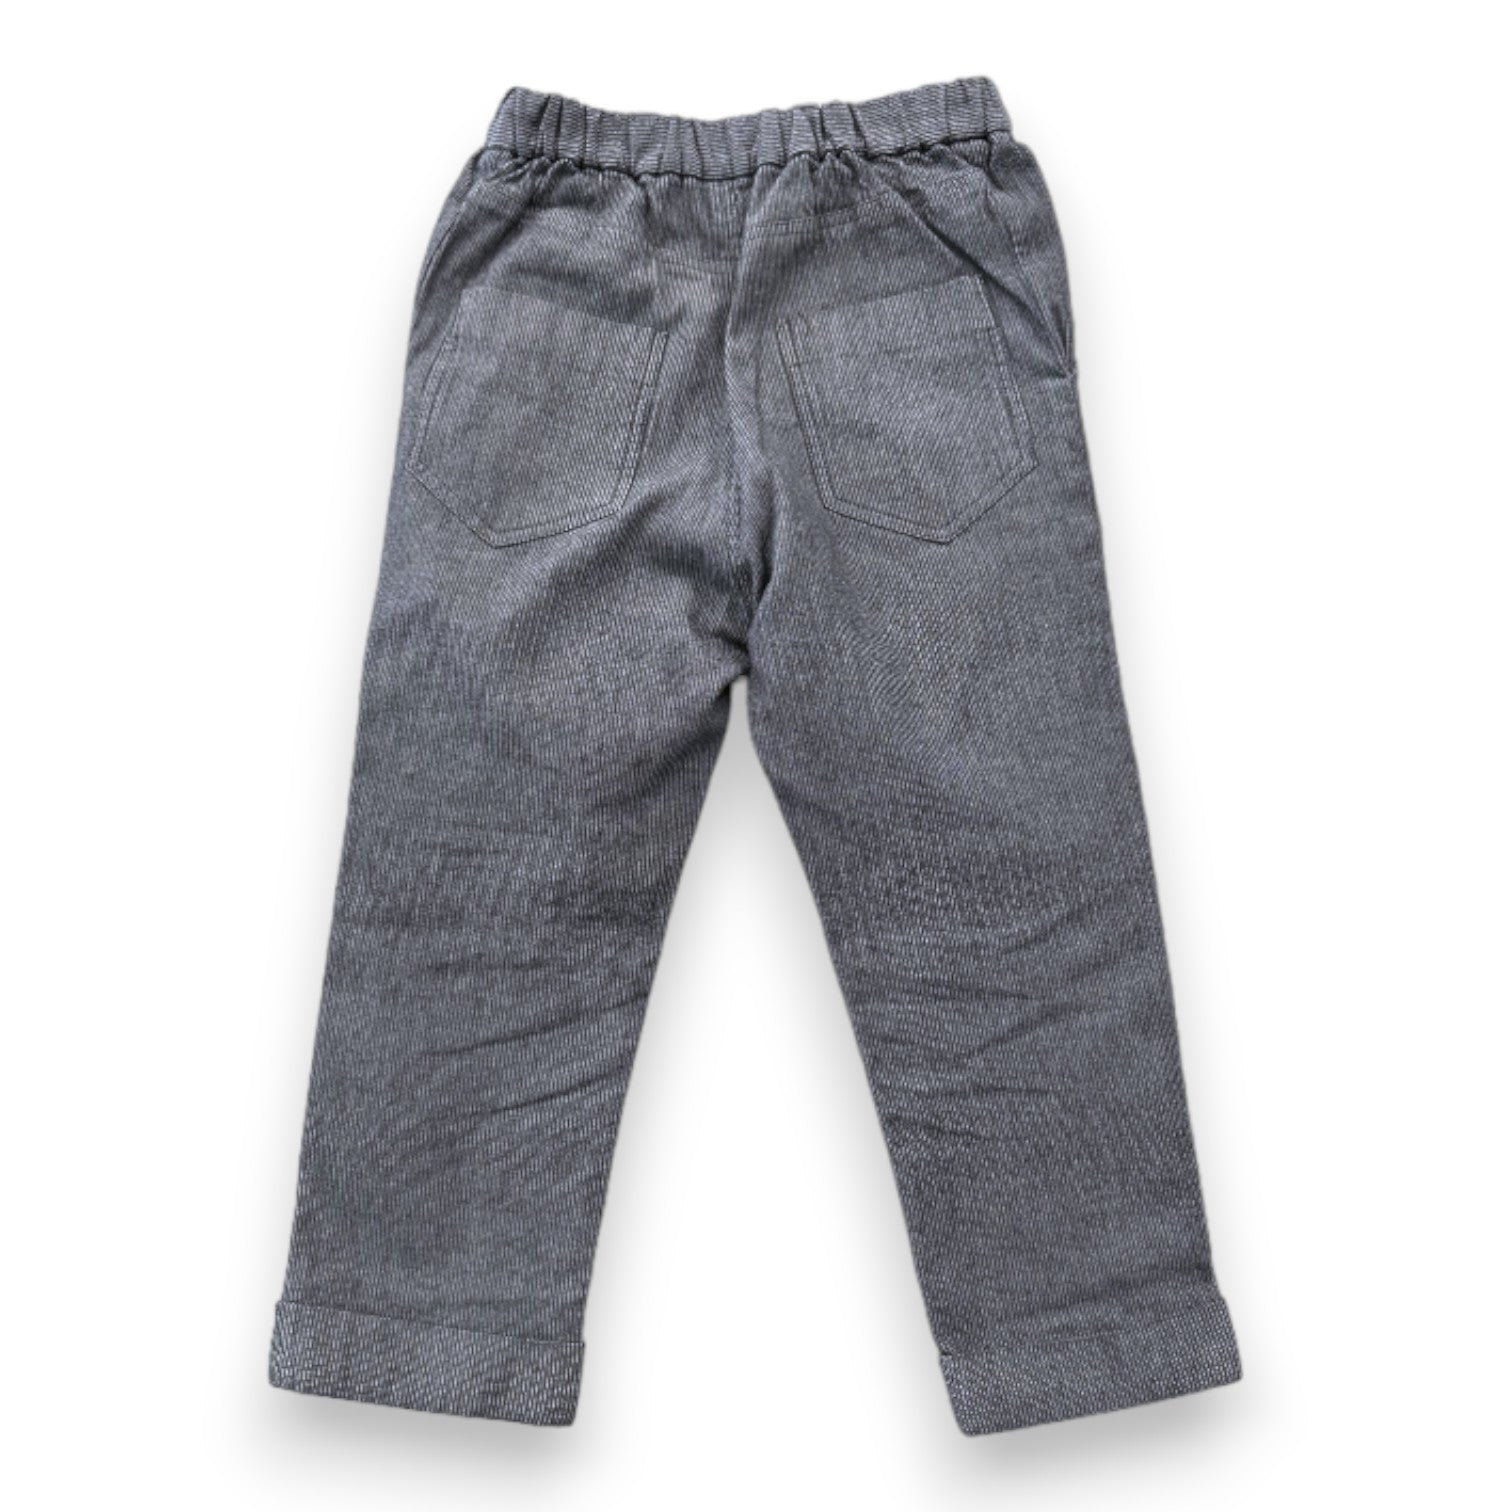 BONPOINT - pantalon gris cintré - 4 ans